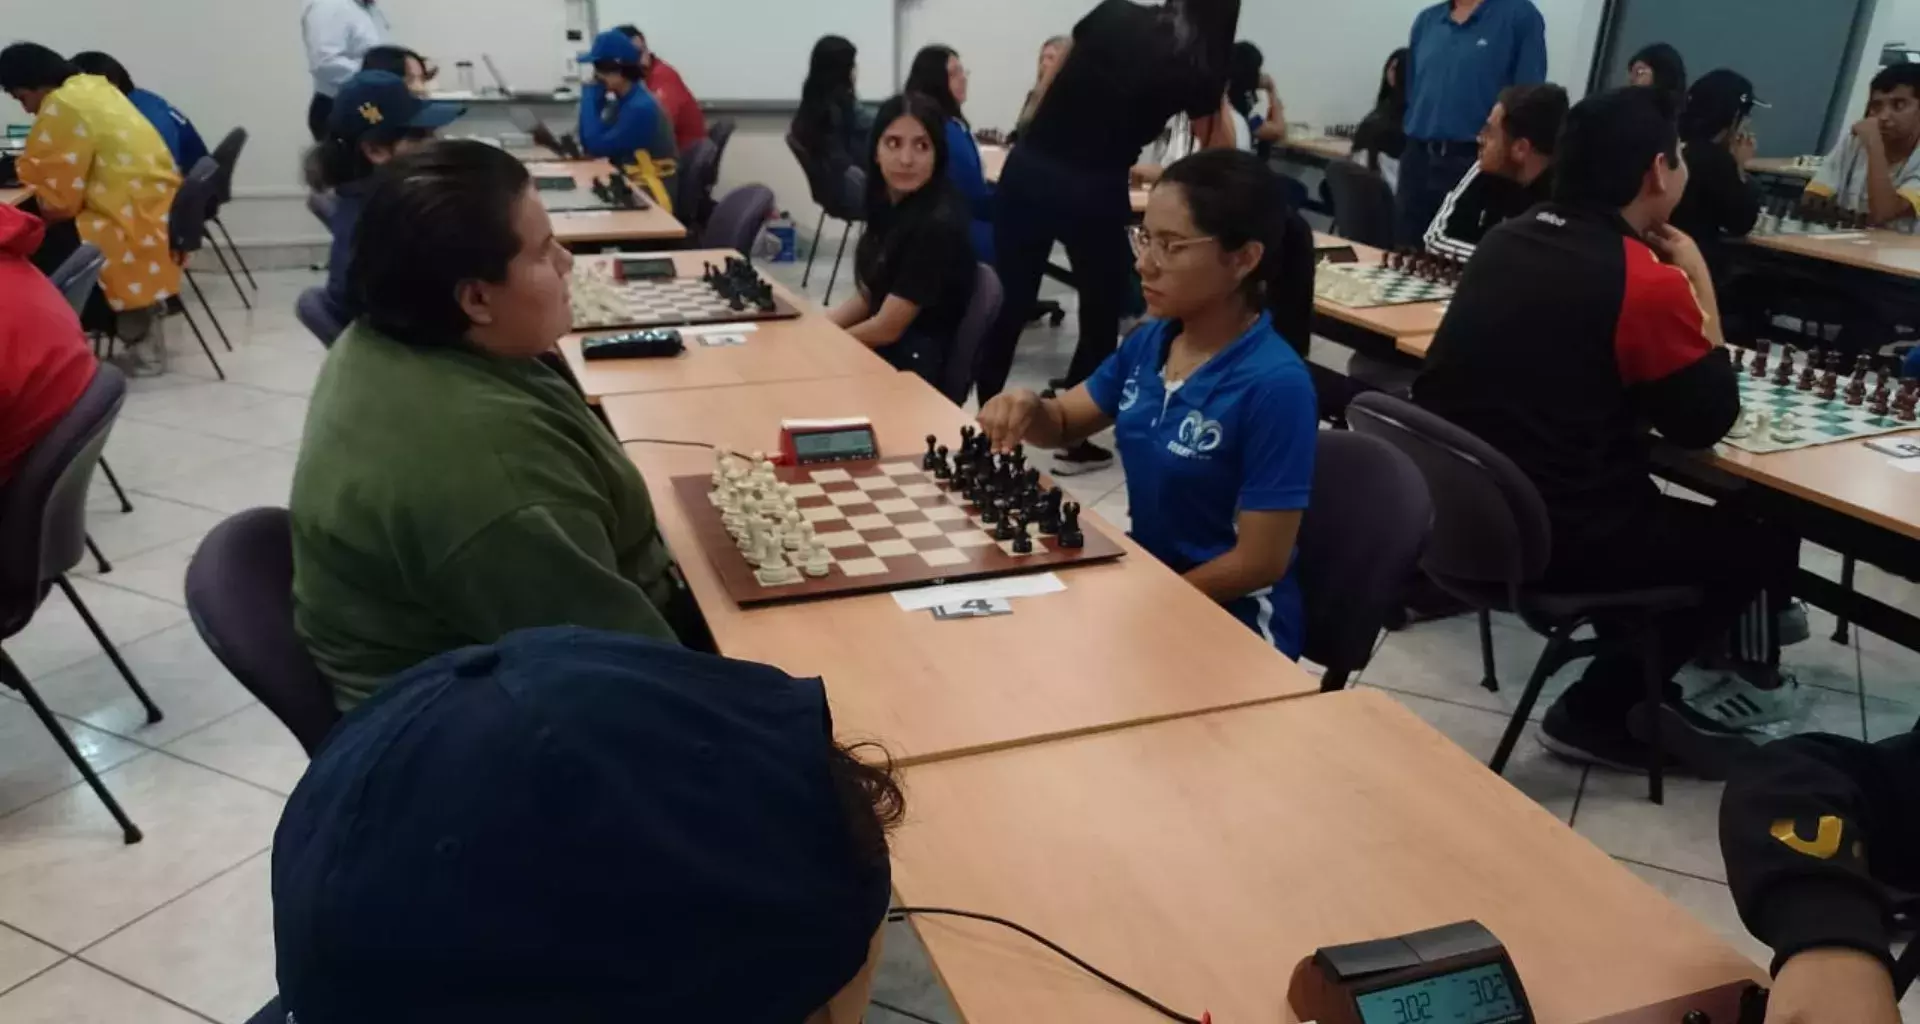 Ximena Ortega se consolida como ajedrecista en Universiada y quiere ser la primera mujer maestra de México.